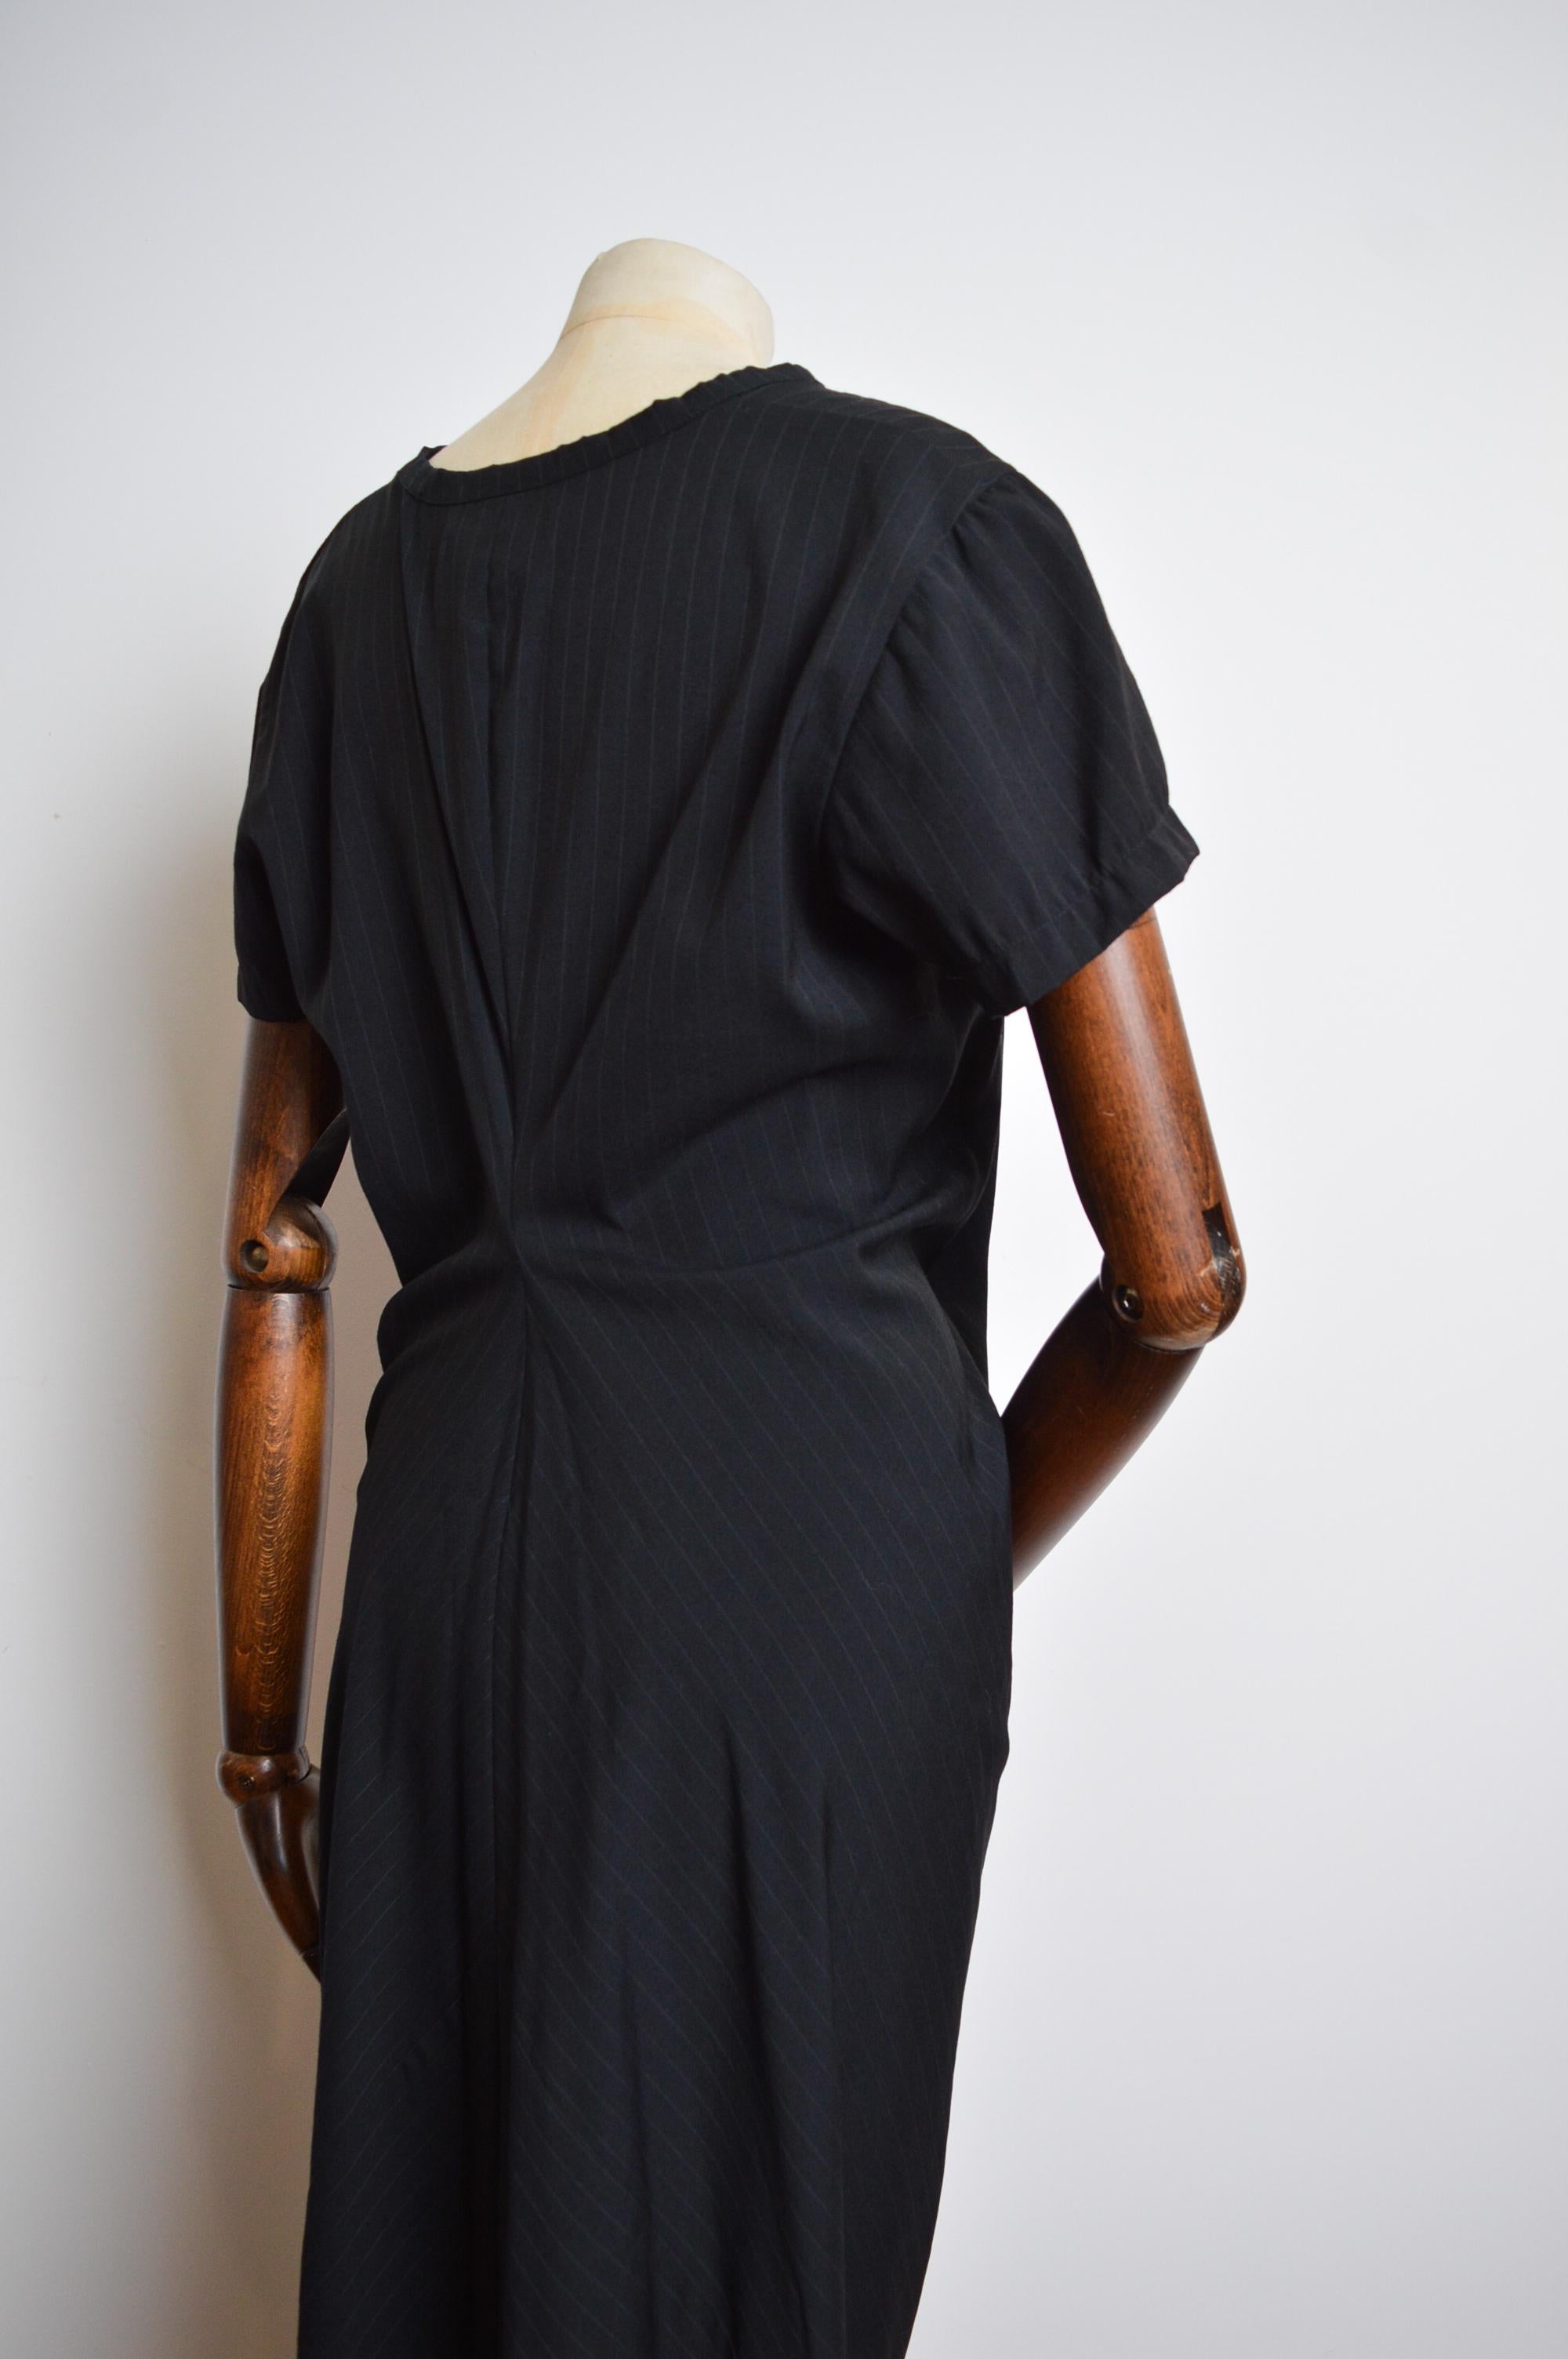 1999 Comme des Garçons 'Robe de Chambre' Avant Guard Body meets Dress style For Sale 9